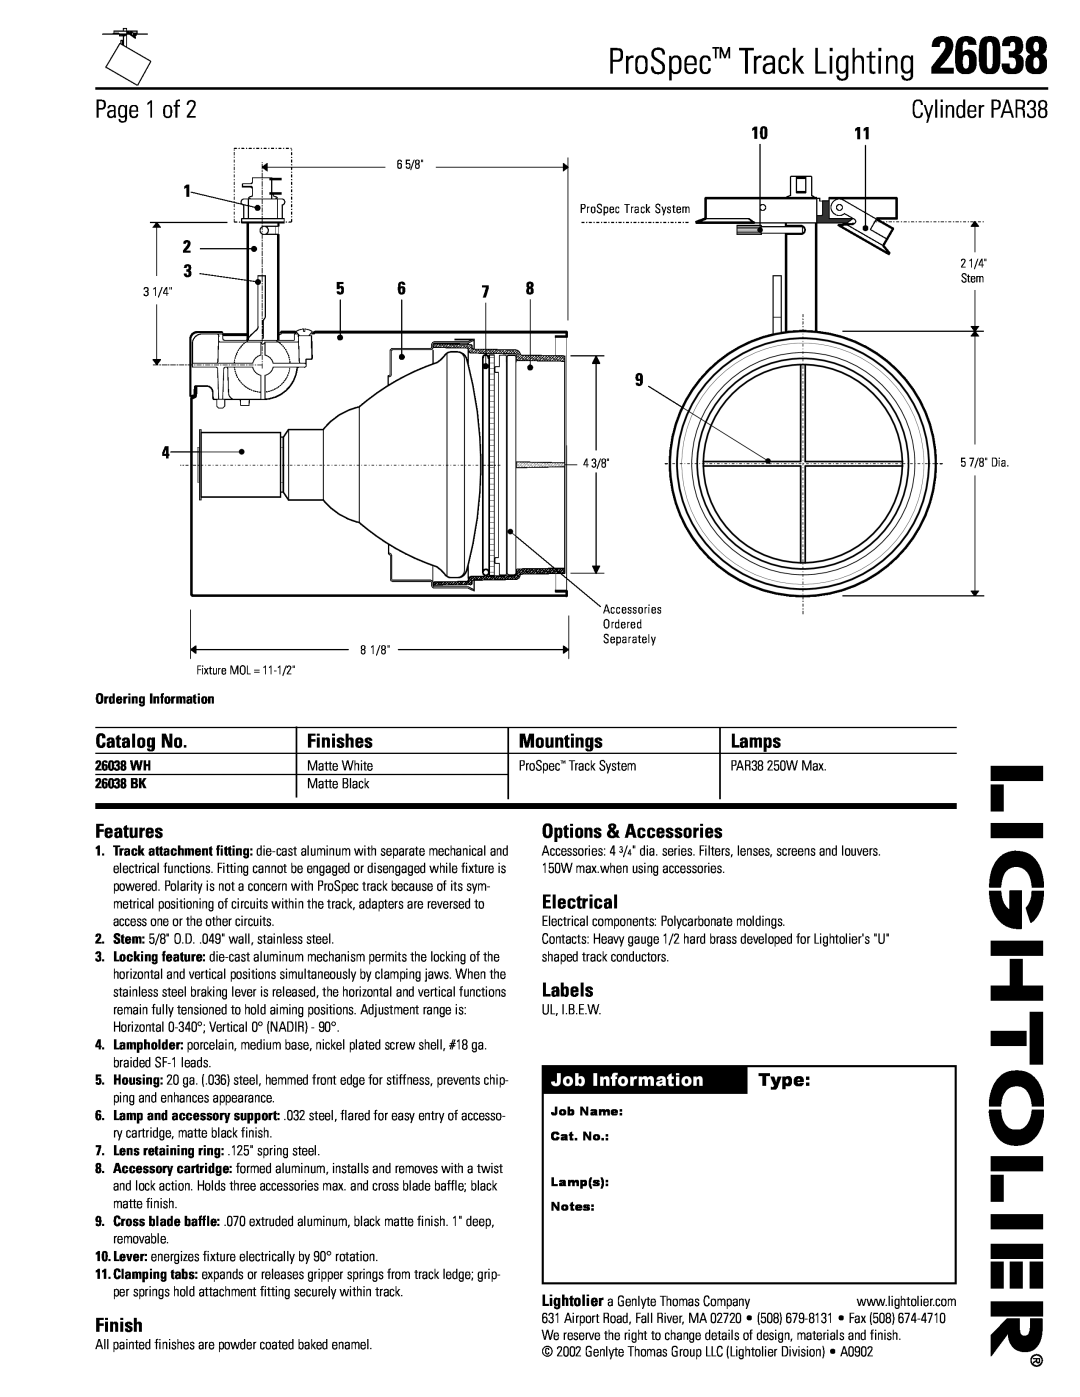 Lightolier 26038 manual ProSpec Track Lighting, Page 1 of, Cylinder PAR38, Job Information, Type, Catalog No, Finishes 